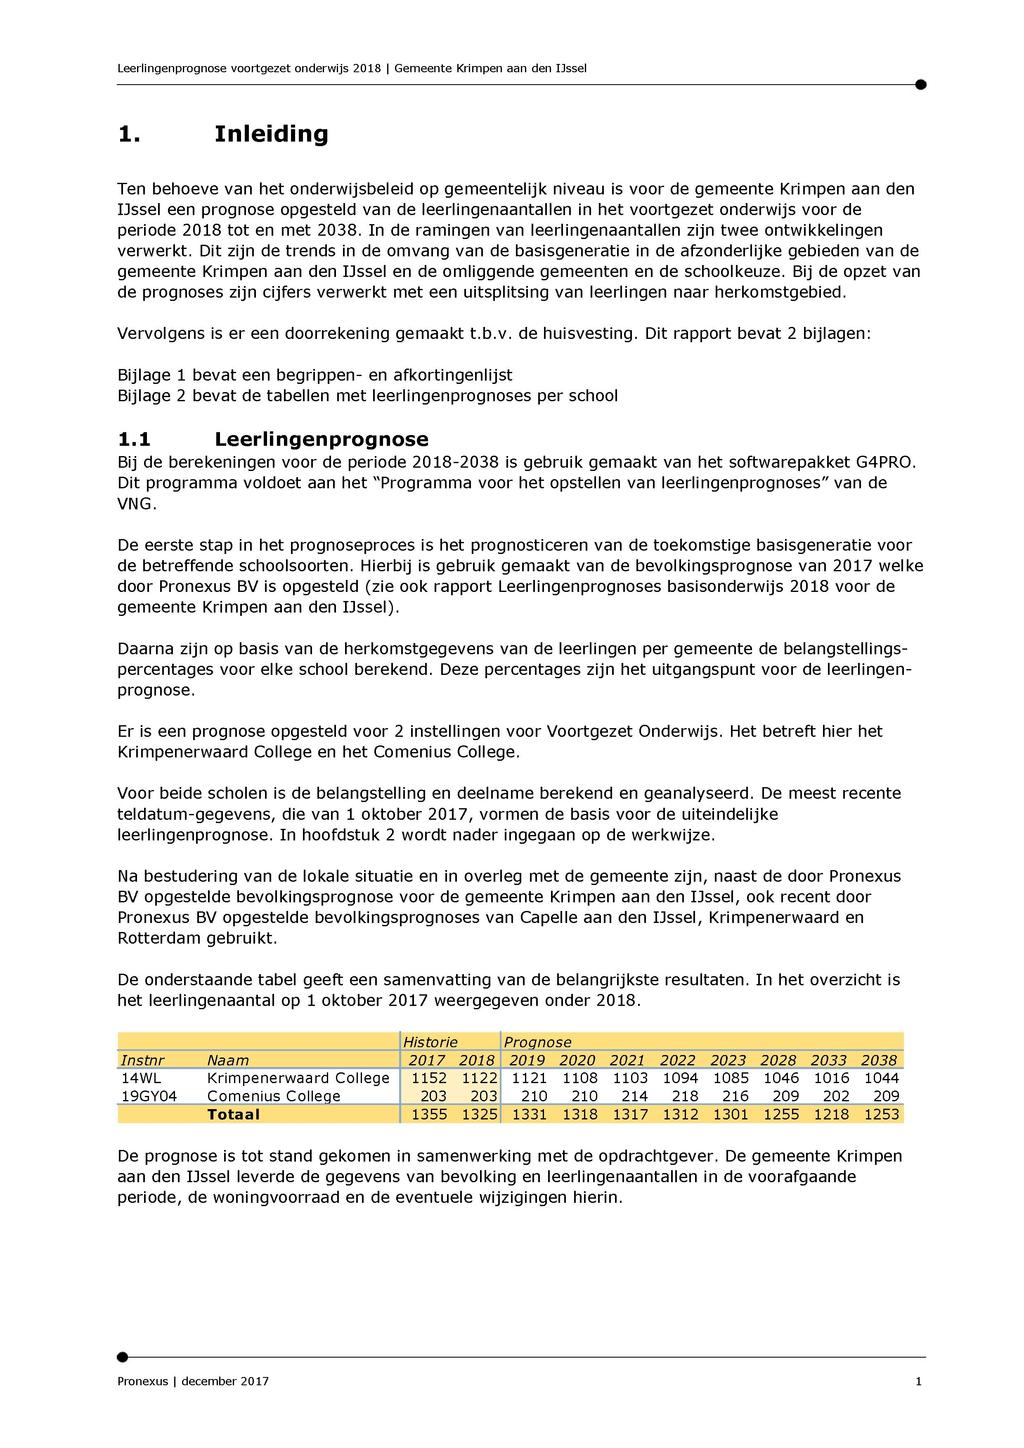 1. Inleiding Ten behoeve van het onderwijsbeleid op gemeentelijk niveau is voor de gemeente Krimpen aan den IJssel een prognose opgesteld van de leerlingenaantallen in het voortgezet onderwijs voor